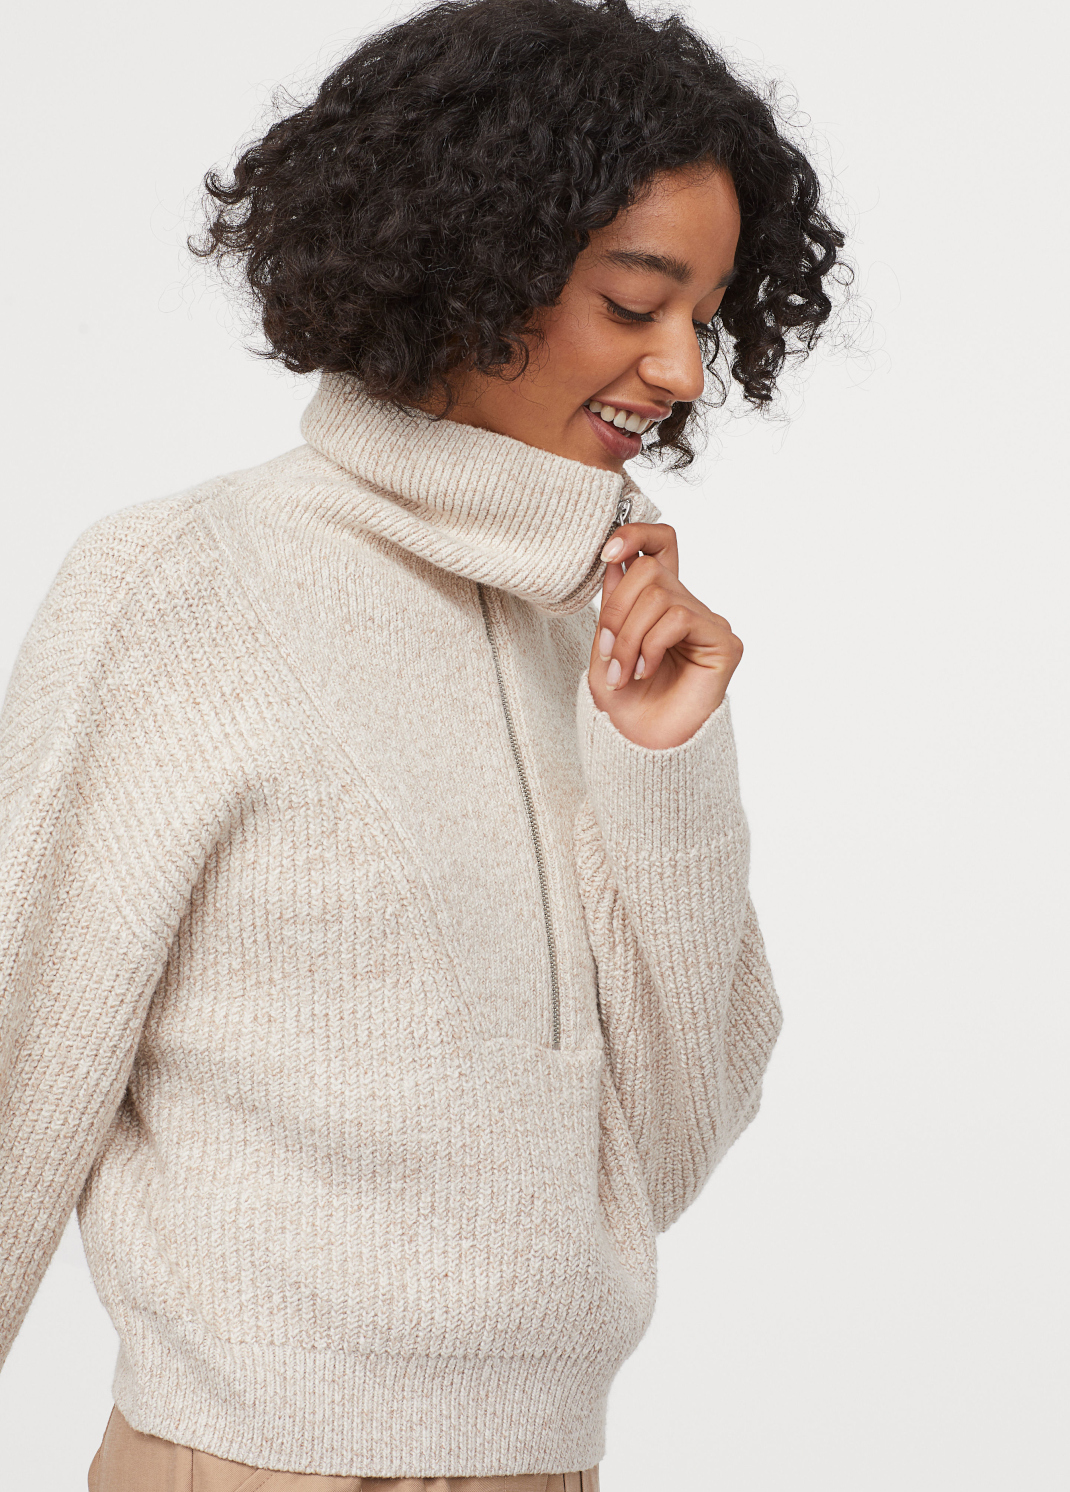 γυναίκα φορά μάλλινο πουλόβερ με φερμουάρ